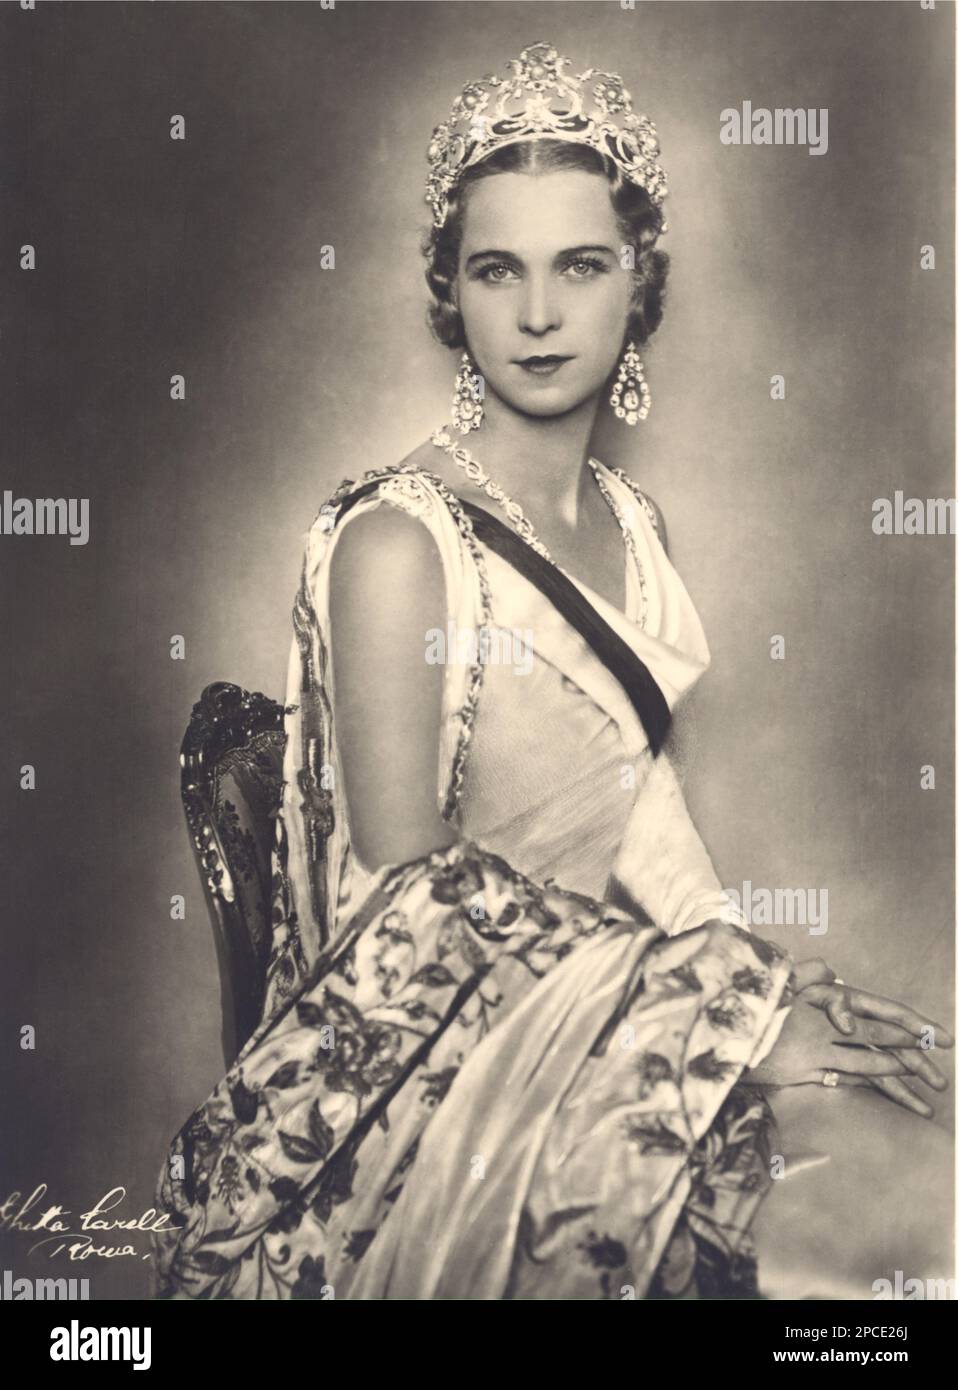 1930 ca. , Roma , Italia : la principessa belga Marie José del BELGIO ( 1906 - 2001 ) , futura ultima Regina d'Italia , sposò nel 1930 il Principe italiano del Piemonte UMBERTO II di SAVOIA ( 1904 - 1983 ) . In questa foto con la tiara disegnata da Umberto stesso . Ritratto di Ghitta Carell , Roma - Casa DEL BRABANTE - BRABANTE - royalty - nobili italiani - nobiltà - principessa reale - ITALIA - BELGIO - Maria José - ritratto - collana - collana - perla - perla - perla - gioiello - gioielli - gioielleria - gioielleria - gioielleria - gioielleria - gioielli - bijoux - corona - corona - orecchino - orecchini - gocce - brillanti - Foto Stock